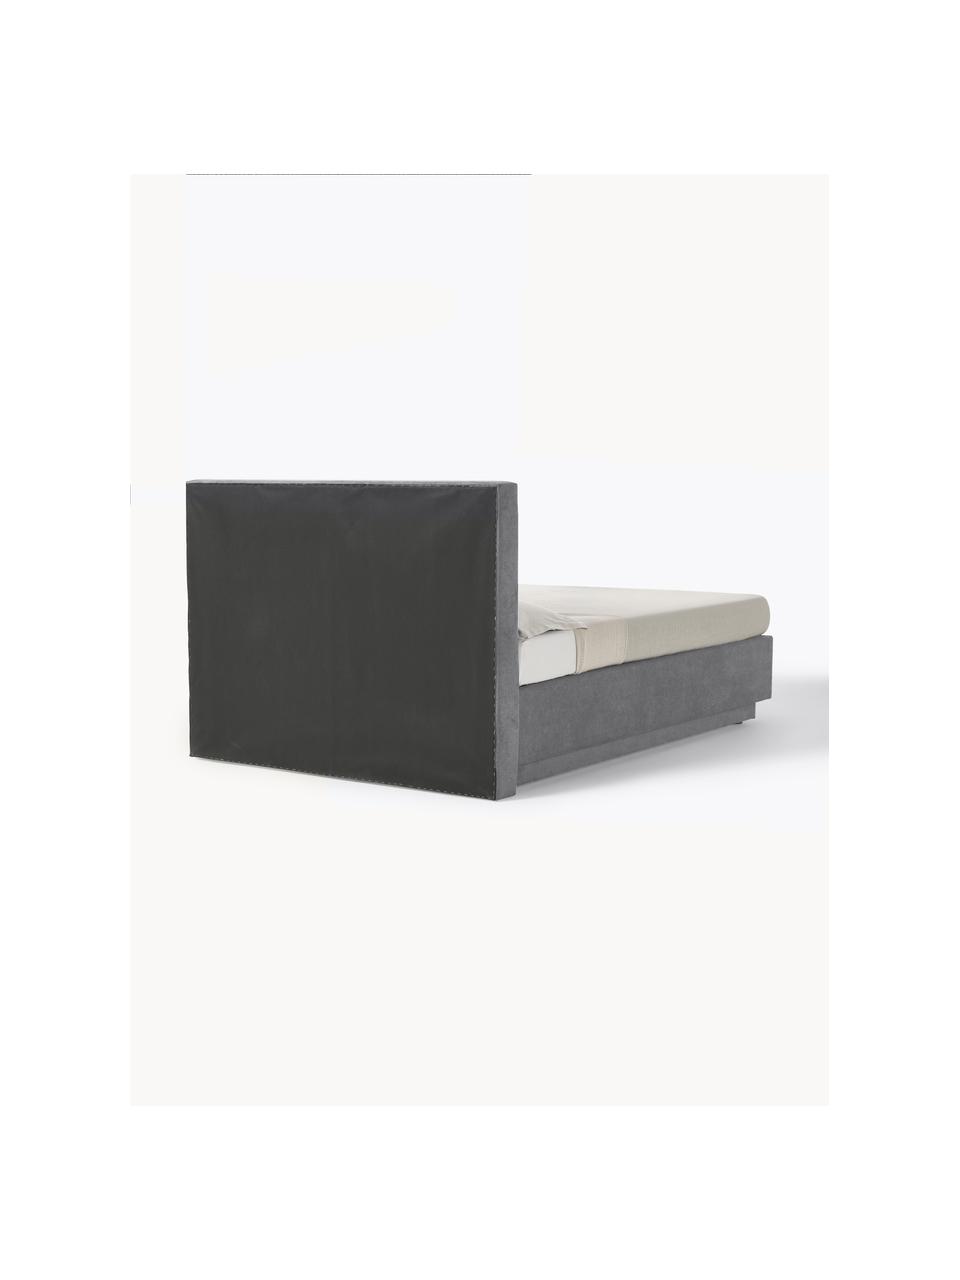 Cama continental Livia, con espacio de almacenamiento, Patas: plástico, Tejido gris oscuro, An 180 x L 200  cm, dureza H2